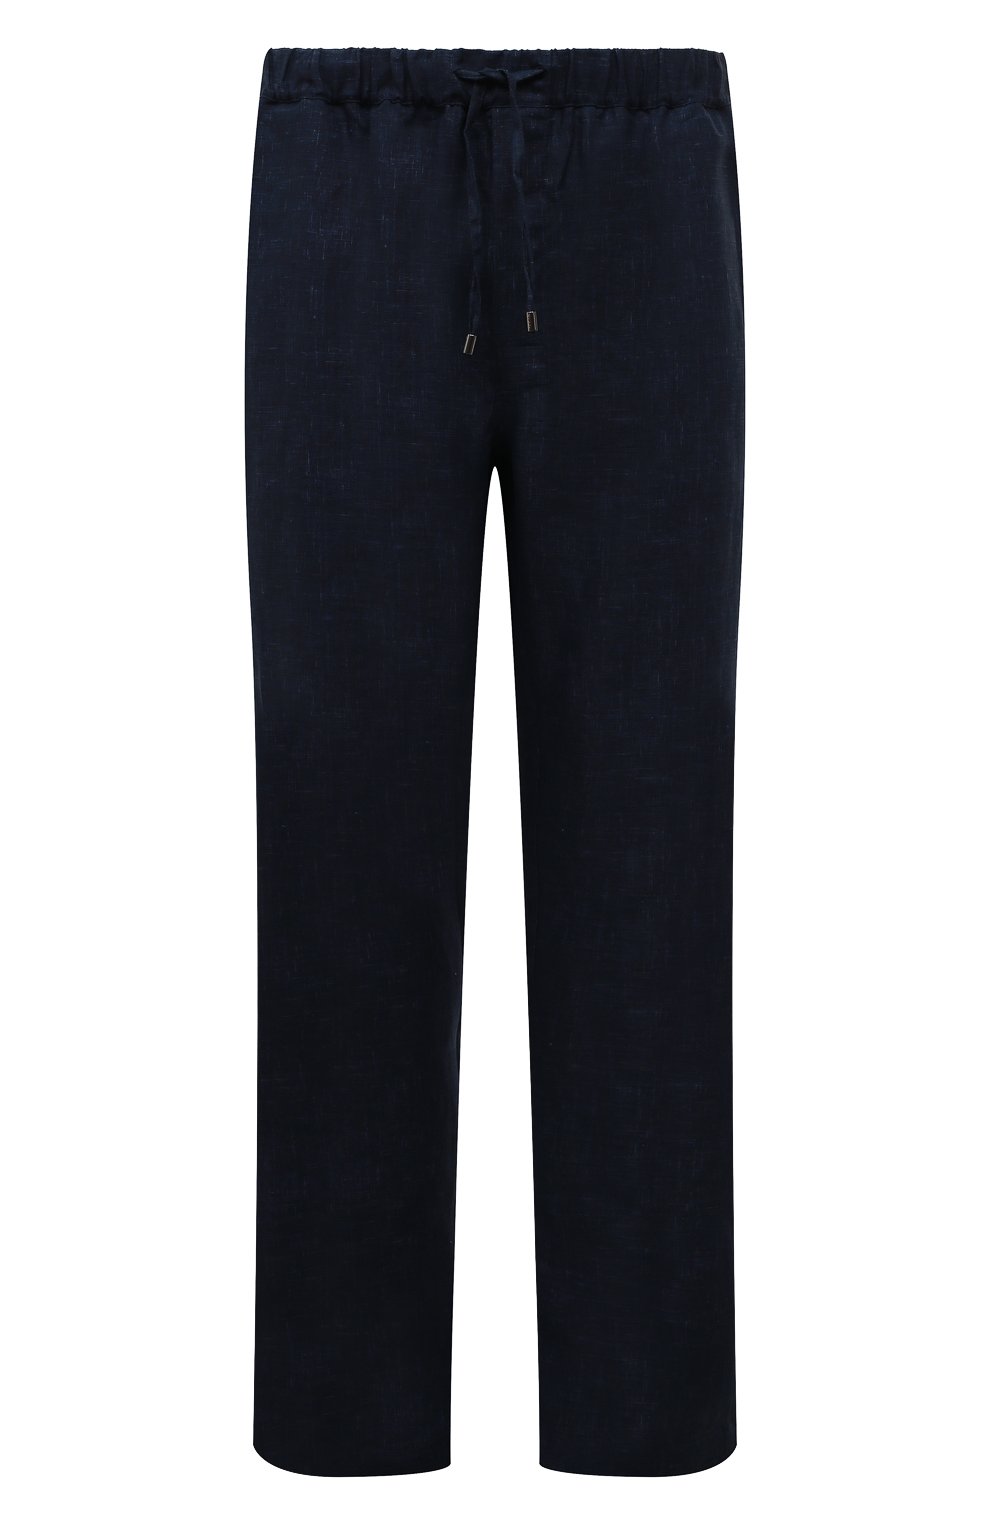 Мужские льняные брюки ZILLI темно-синего цвета, арт. MFX-84060-G13711/0004 | Фото 1 (Длина (брюки, джинсы): Стандартные; Случай: Повседневный; Материал внешний: Лен; Стили: Кэжуэл)